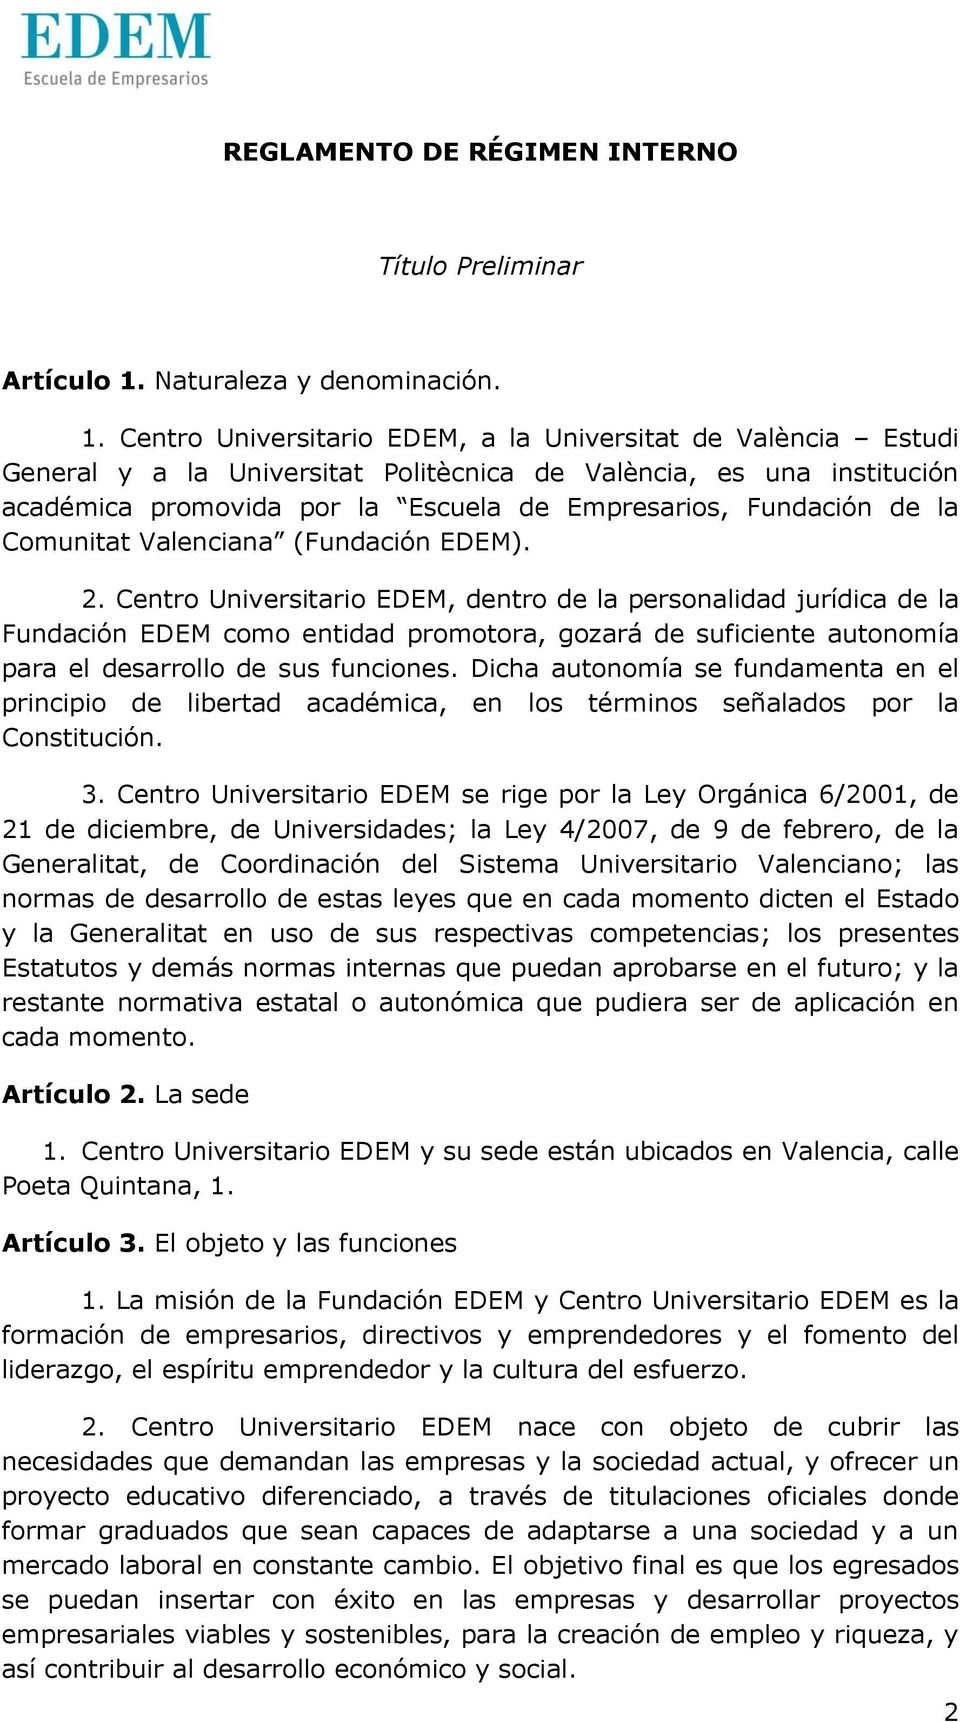 Centro Universitario EDEM, a la Universitat de València Estudi General y a la Universitat Politècnica de València, es una institución académica promovida por la Escuela de Empresarios, Fundación de